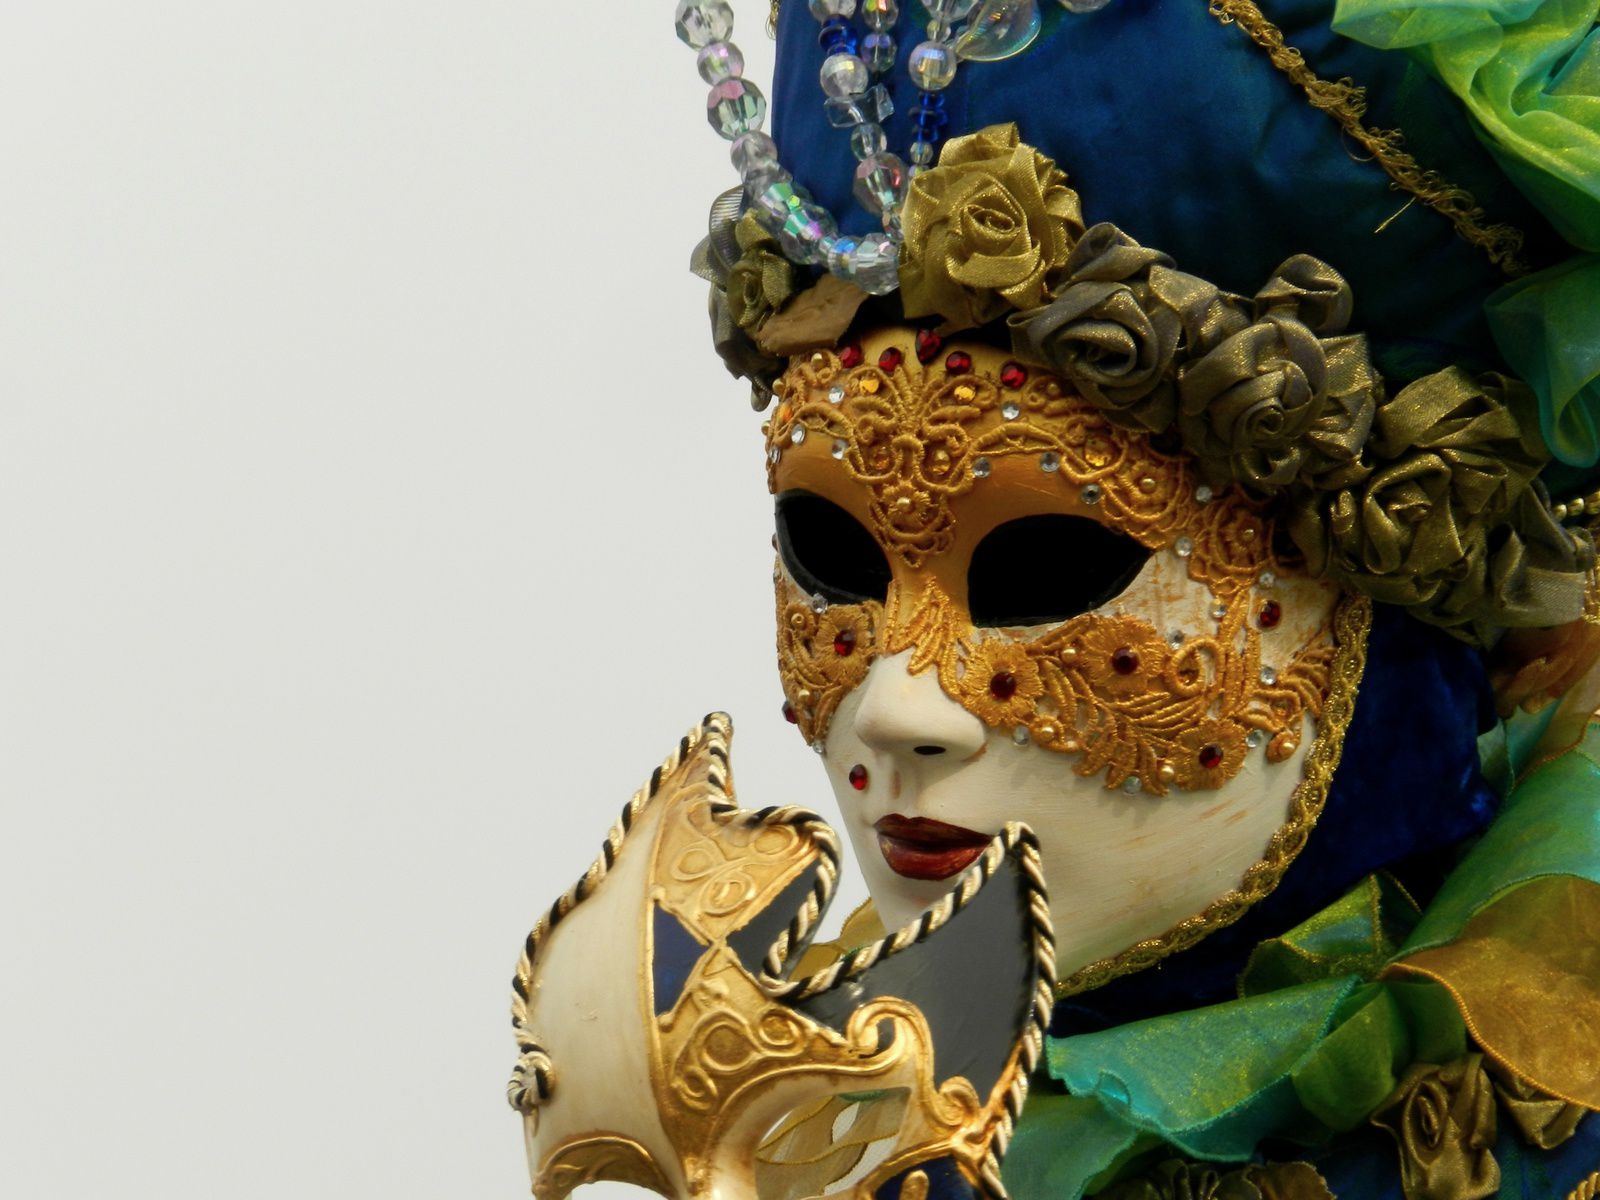 Cette année le Carnaval a accueilli plus de 300 masques provenant de France, Suisse ou Hollande.